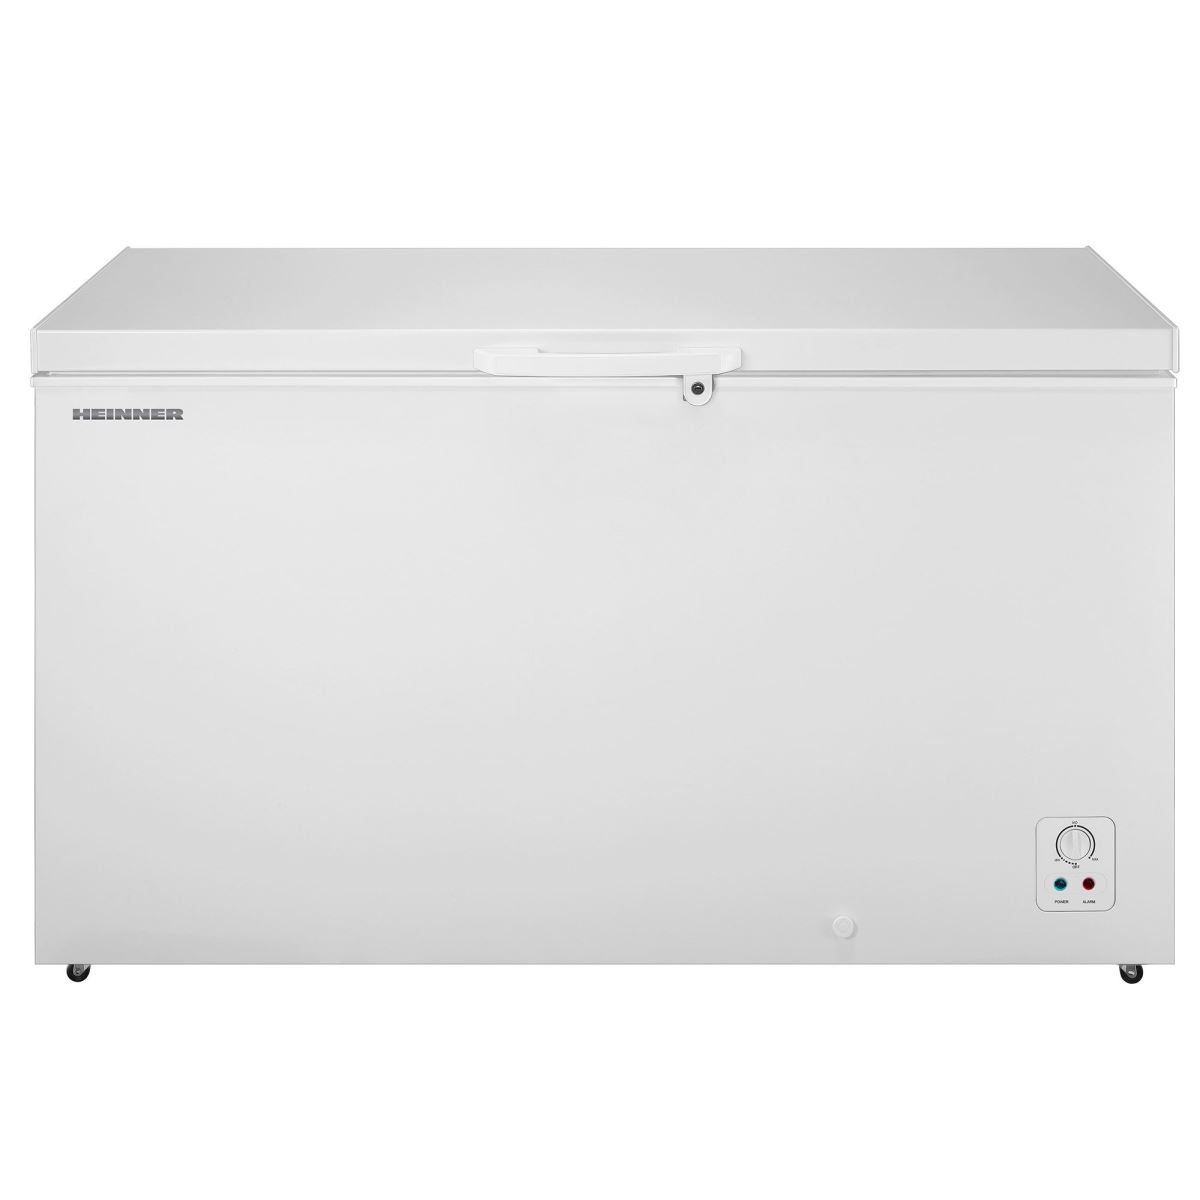 Lada frigorifica Heinner HCF-420A+, 420 l, Alb